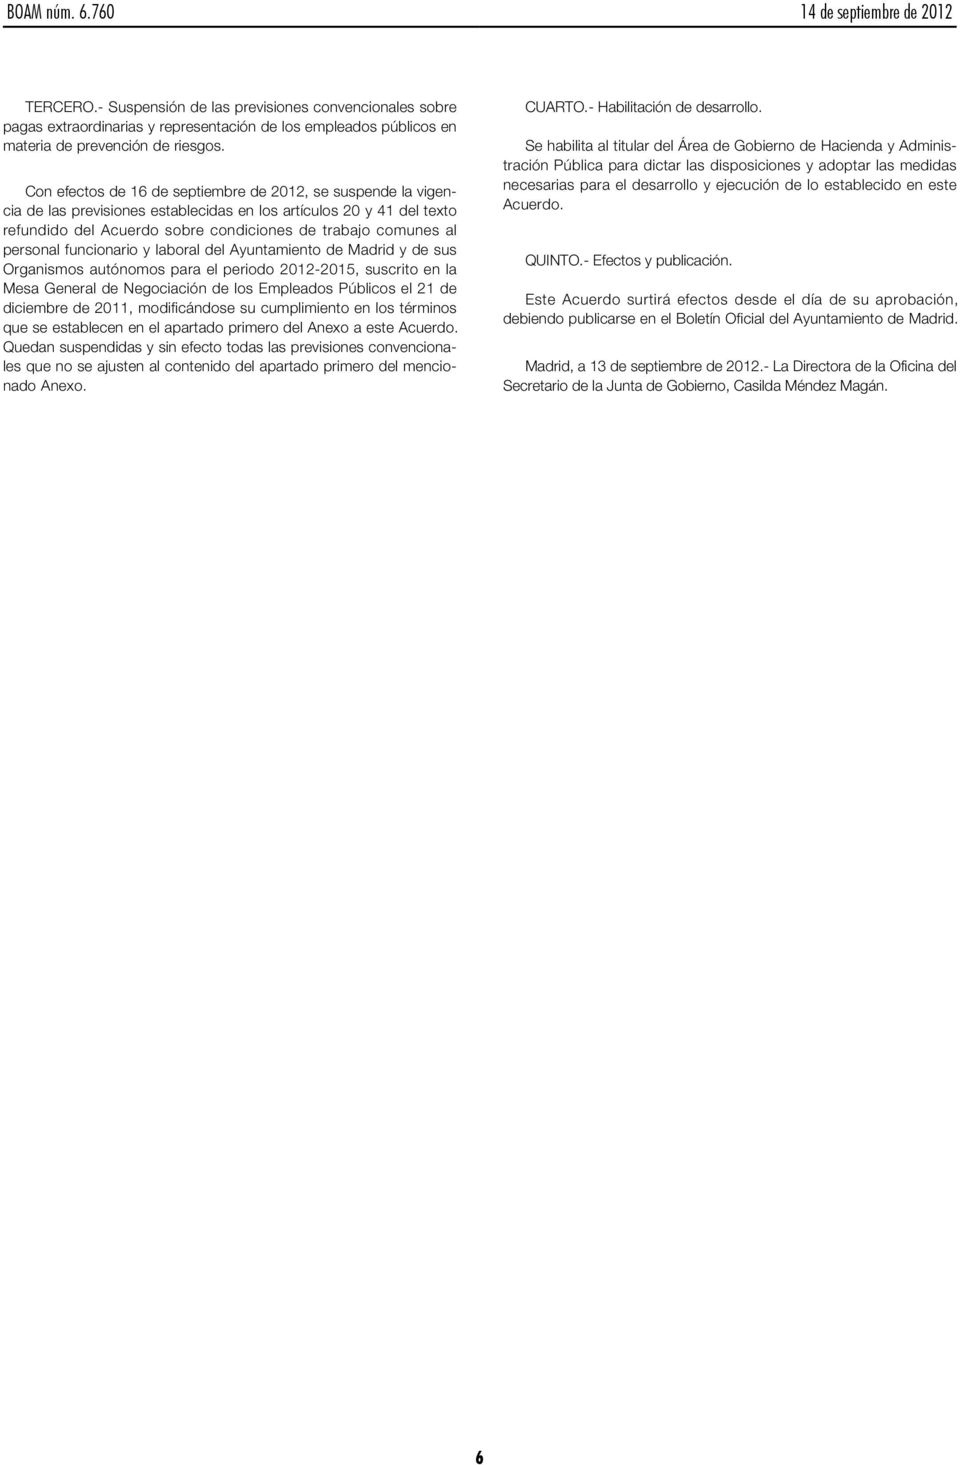 personal funcionario y laboral del Ayuntamiento de Madrid y de sus Organismos autónomos para el periodo 2012-2015, suscrito en la Mesa General de Negociación de los Empleados Públicos el 21 de